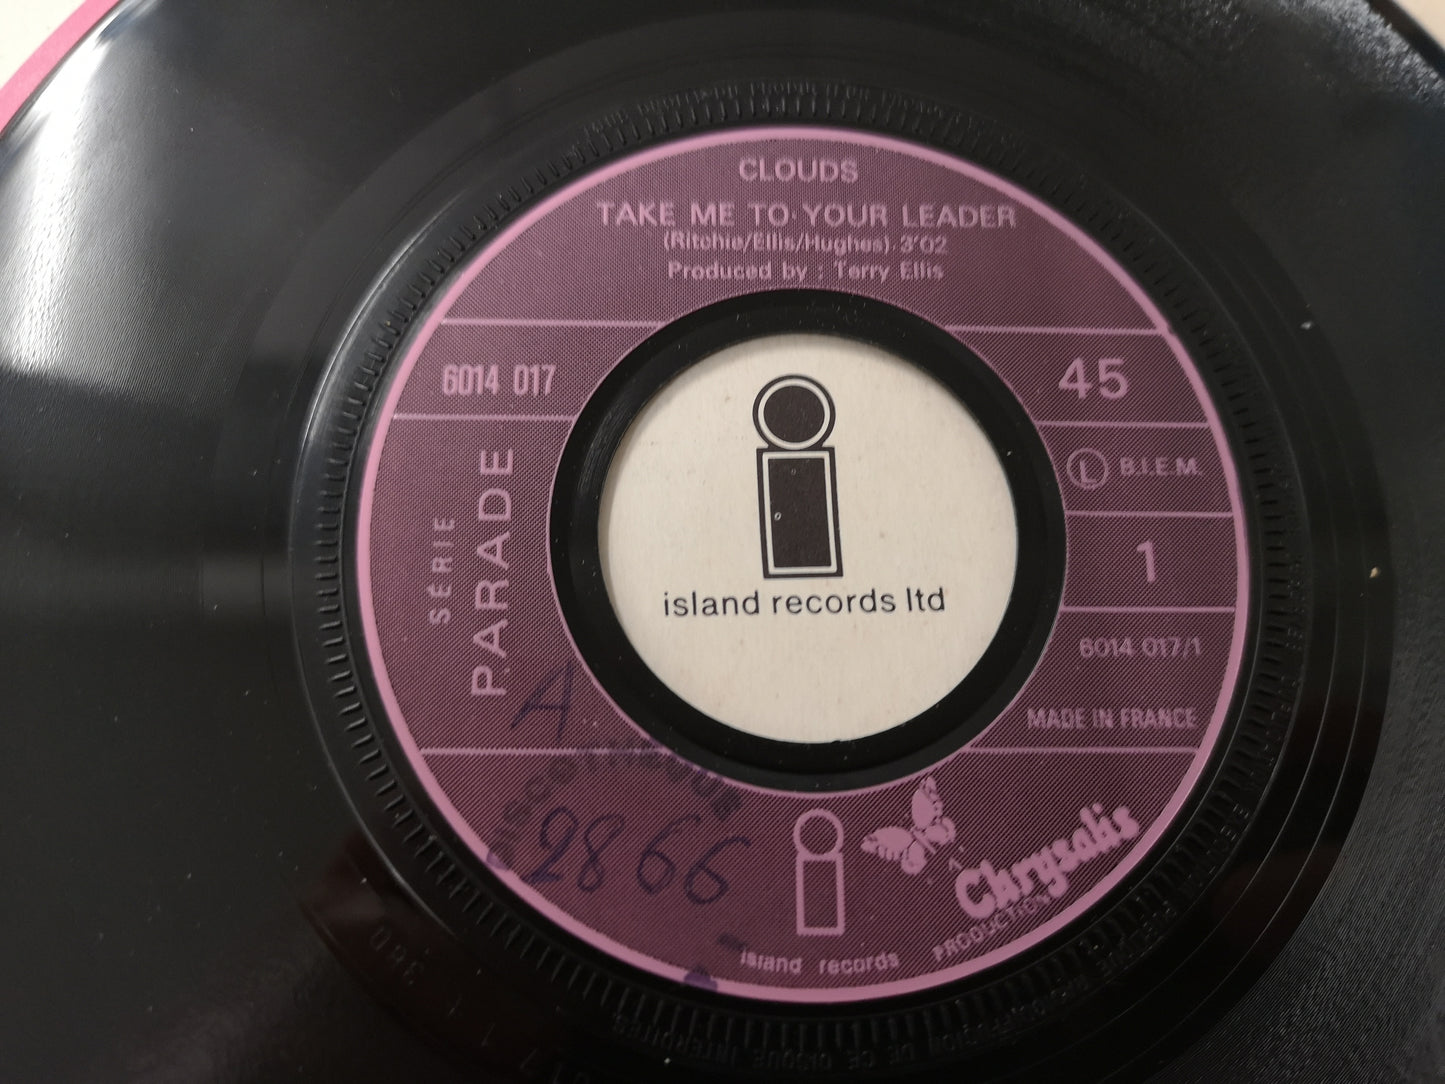 Clouds "Take Me to Your Leader" Orig France 1970 EX/EX (UK Prog)